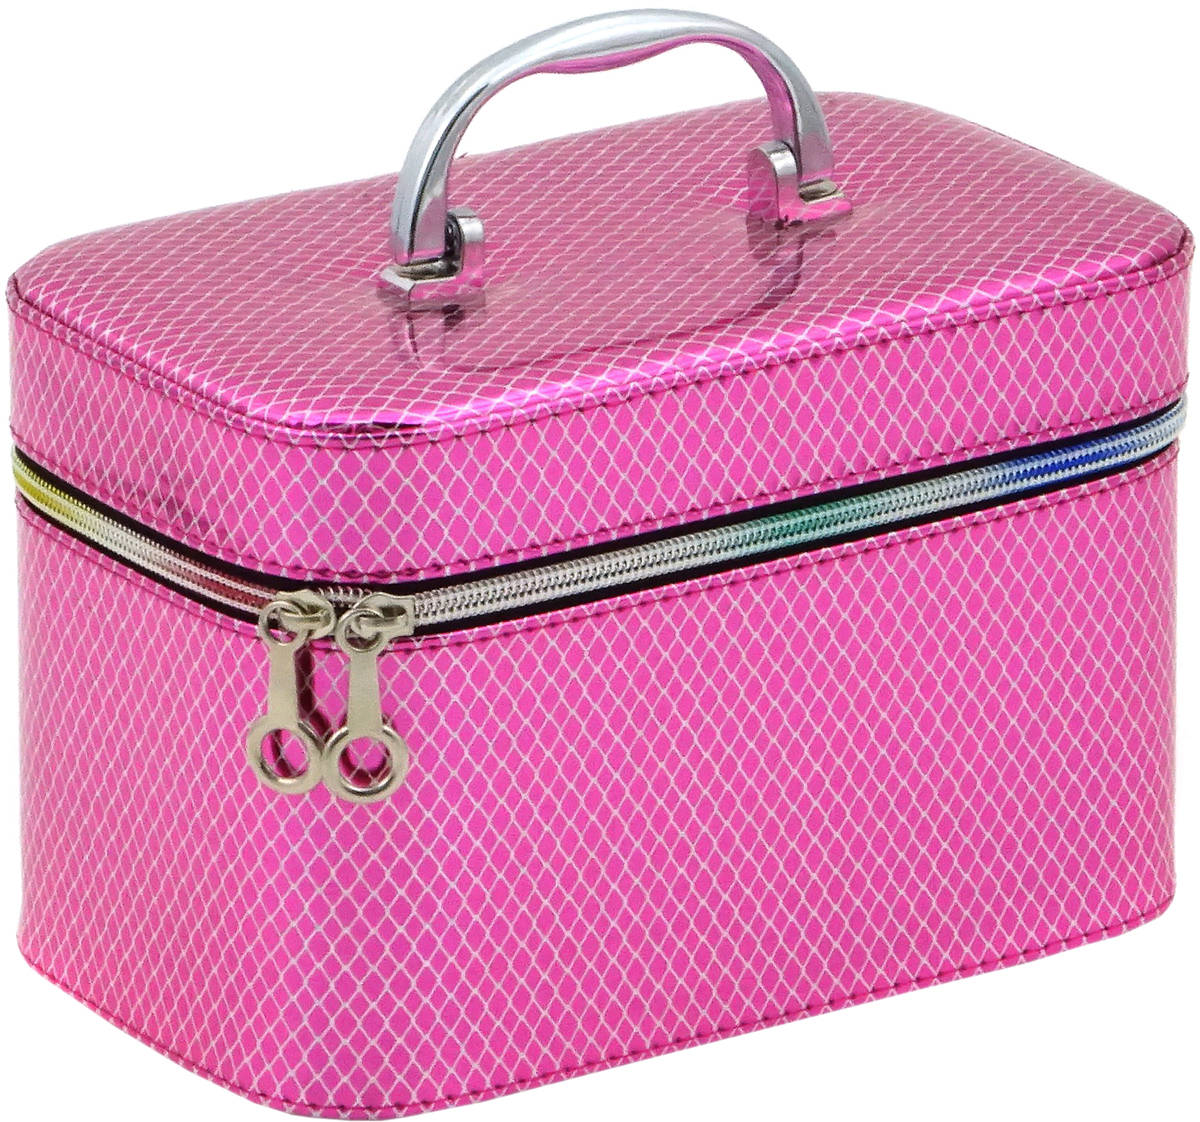 Kufřík dětský kosmetický růžový mřížkovaný vel. M se zrcátkem na zip